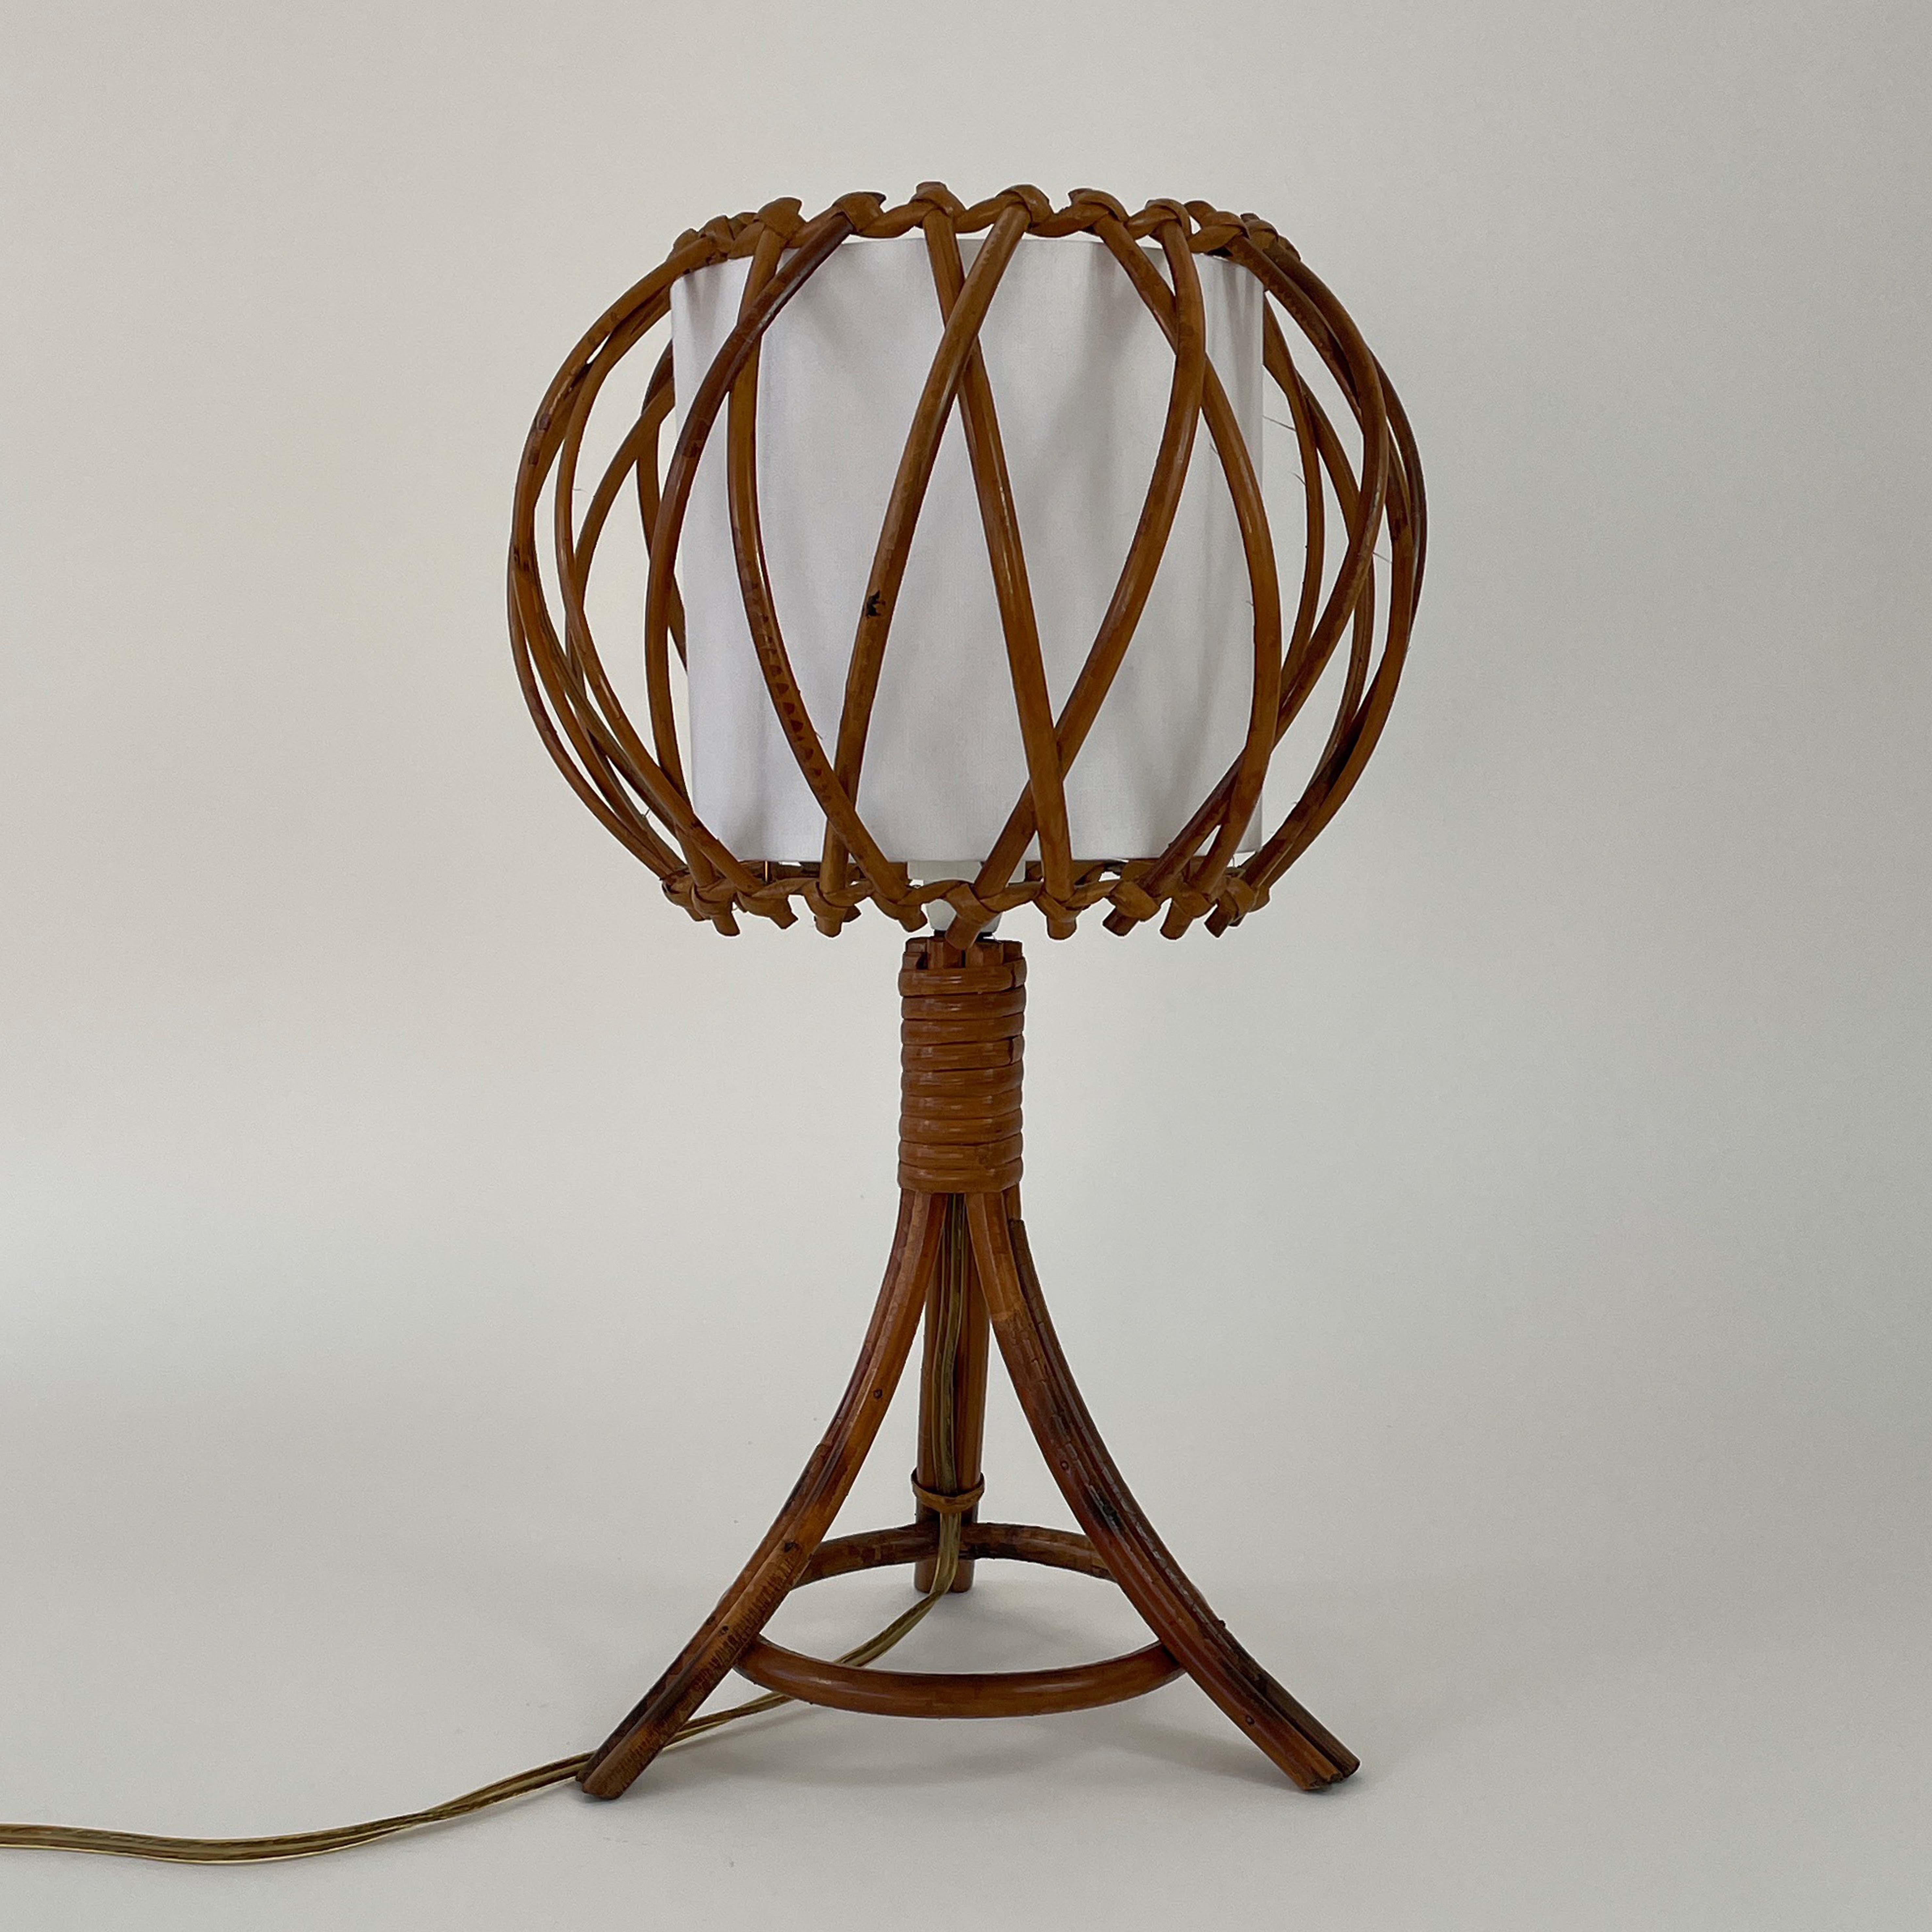 Diese schöne Tischleuchte wurde in den 1950er Jahren von Louis Sognot in Frankreich entworfen und hergestellt. Der Sockel besteht aus Bambus und Rattan, der Diffusor aus cremefarbenem Stoff. Der Lampenschirm aus Stoff wurde überarbeitet.

Die